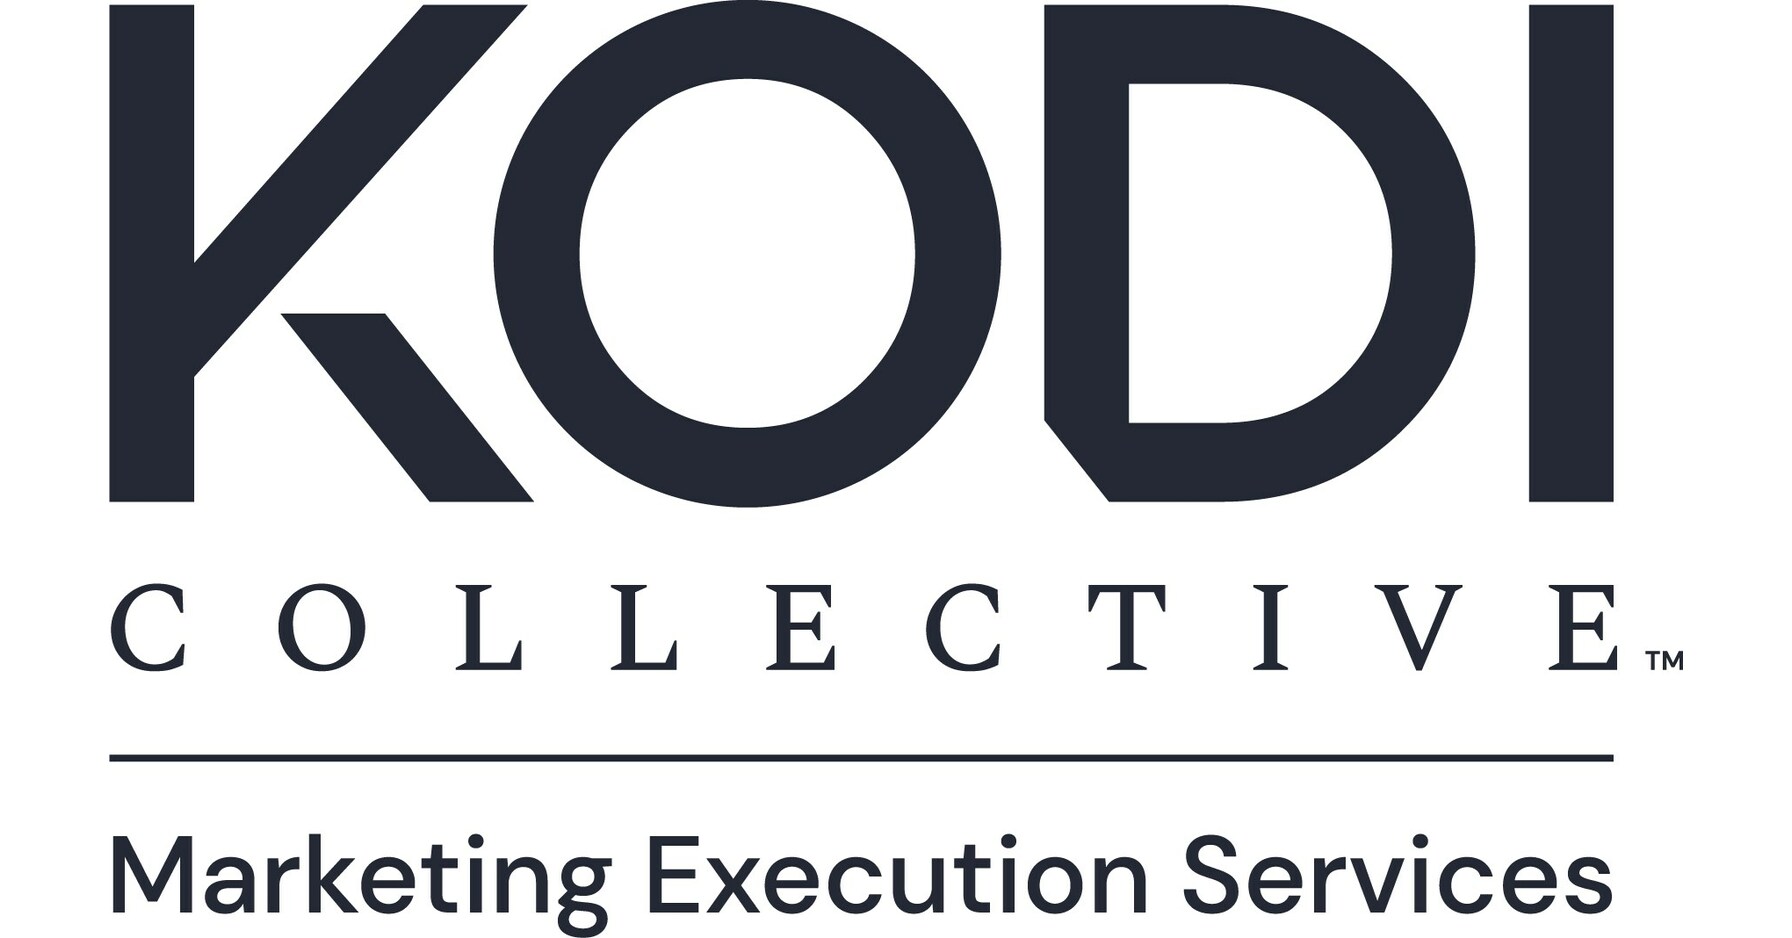 Kodi Collective